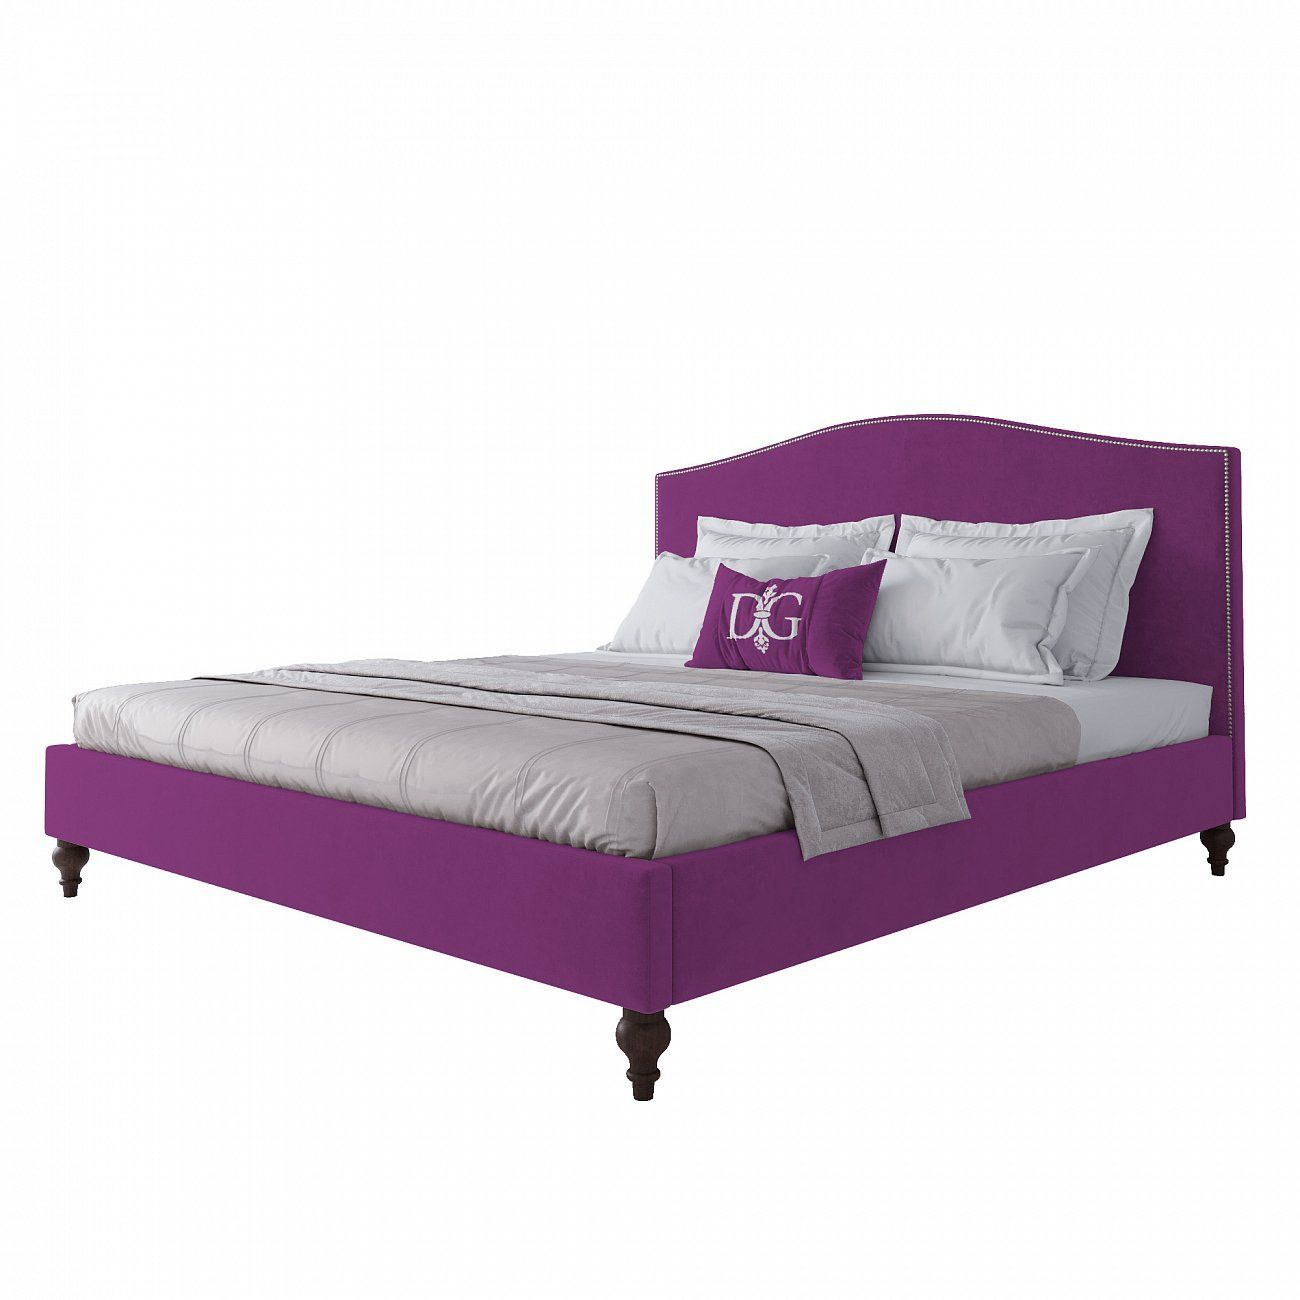 Double bed 180x200 cm purple Fleurie